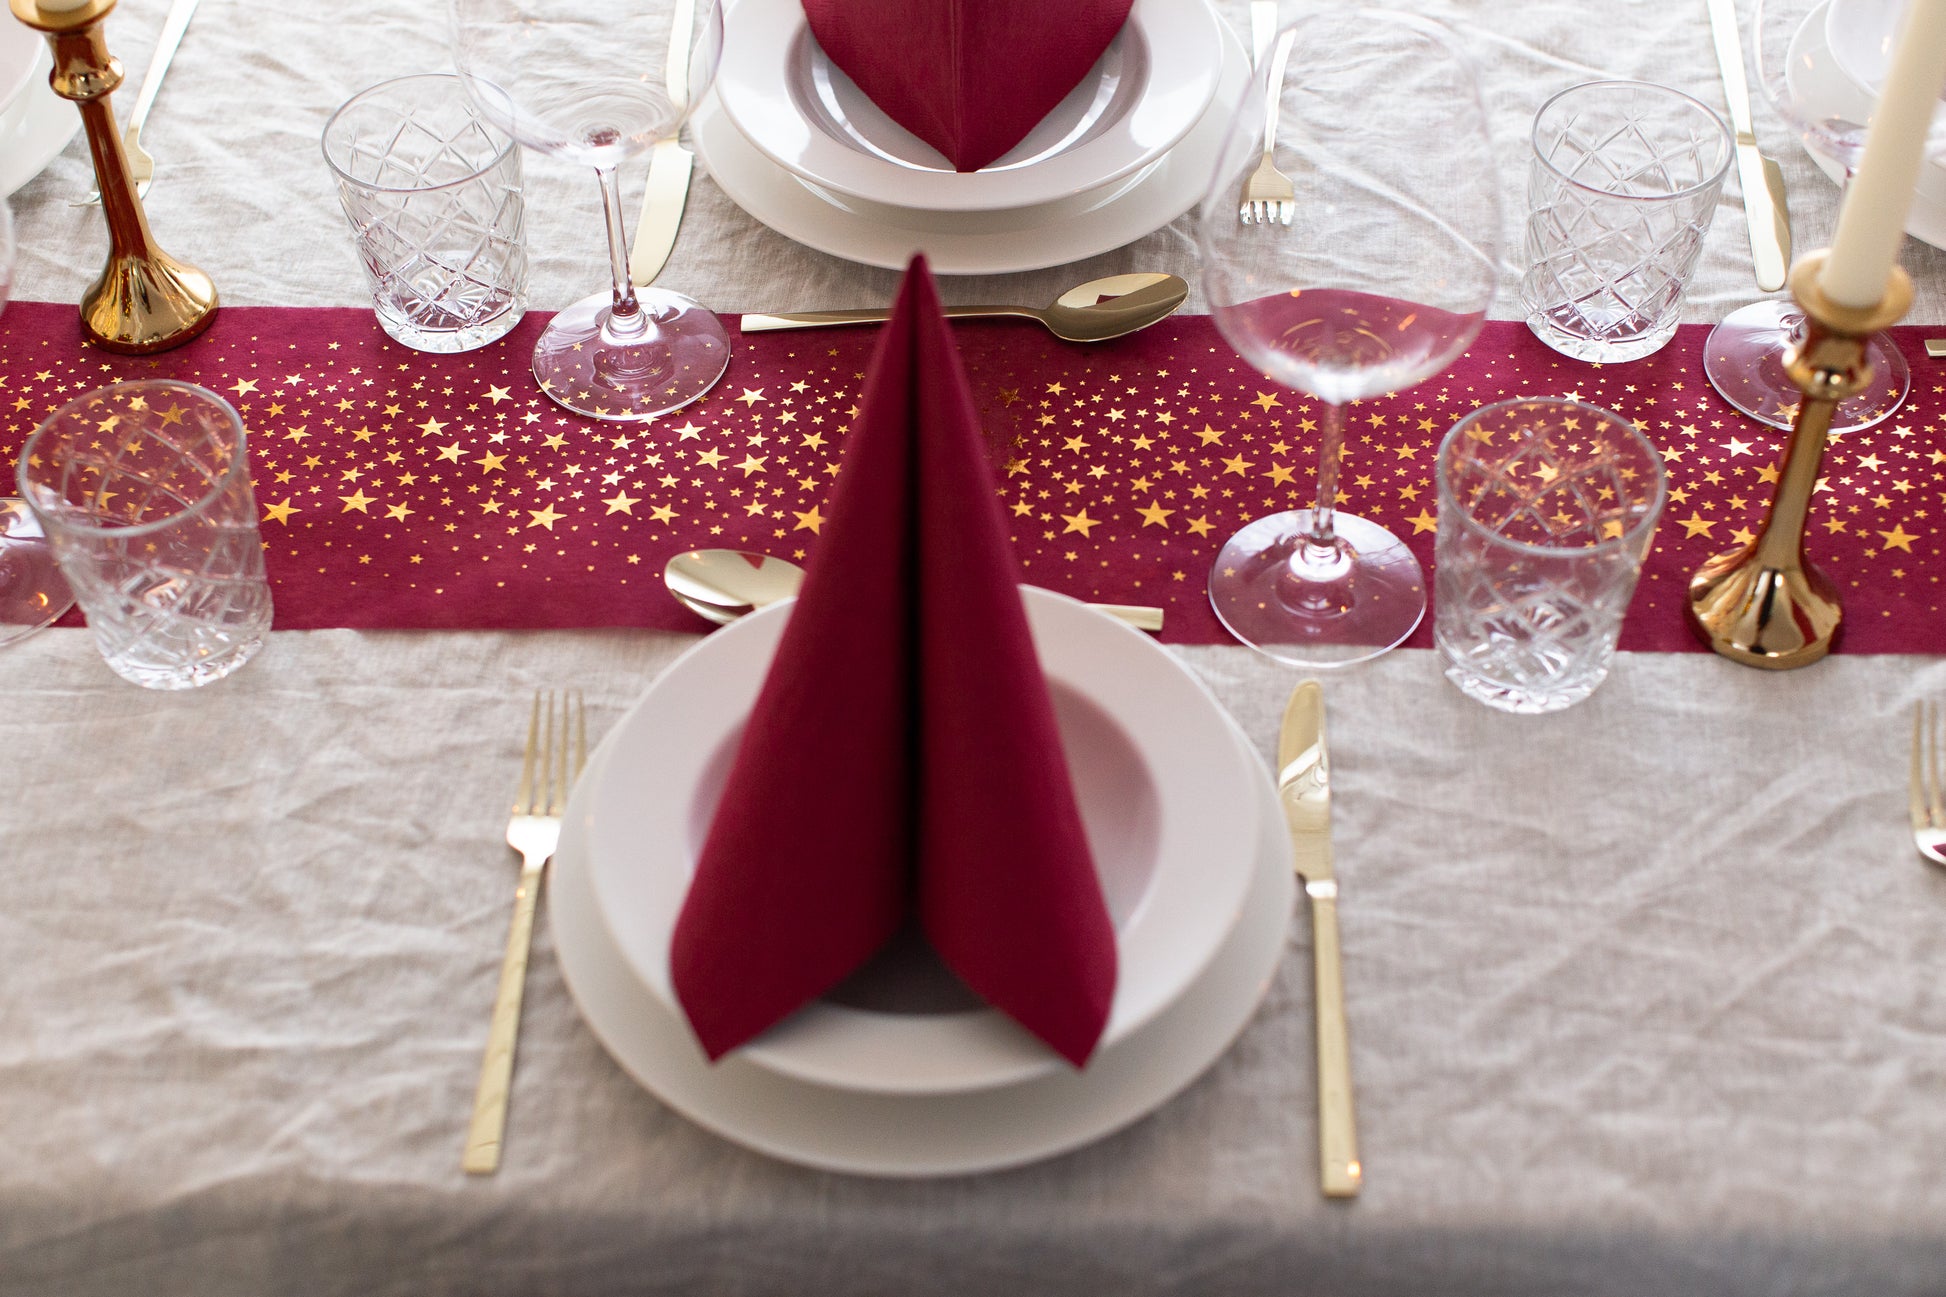 Förderungsanreiz Tischläufer für Weihnachten in Bordeaux 100%Mosel mit Sternen Rot - goldenen